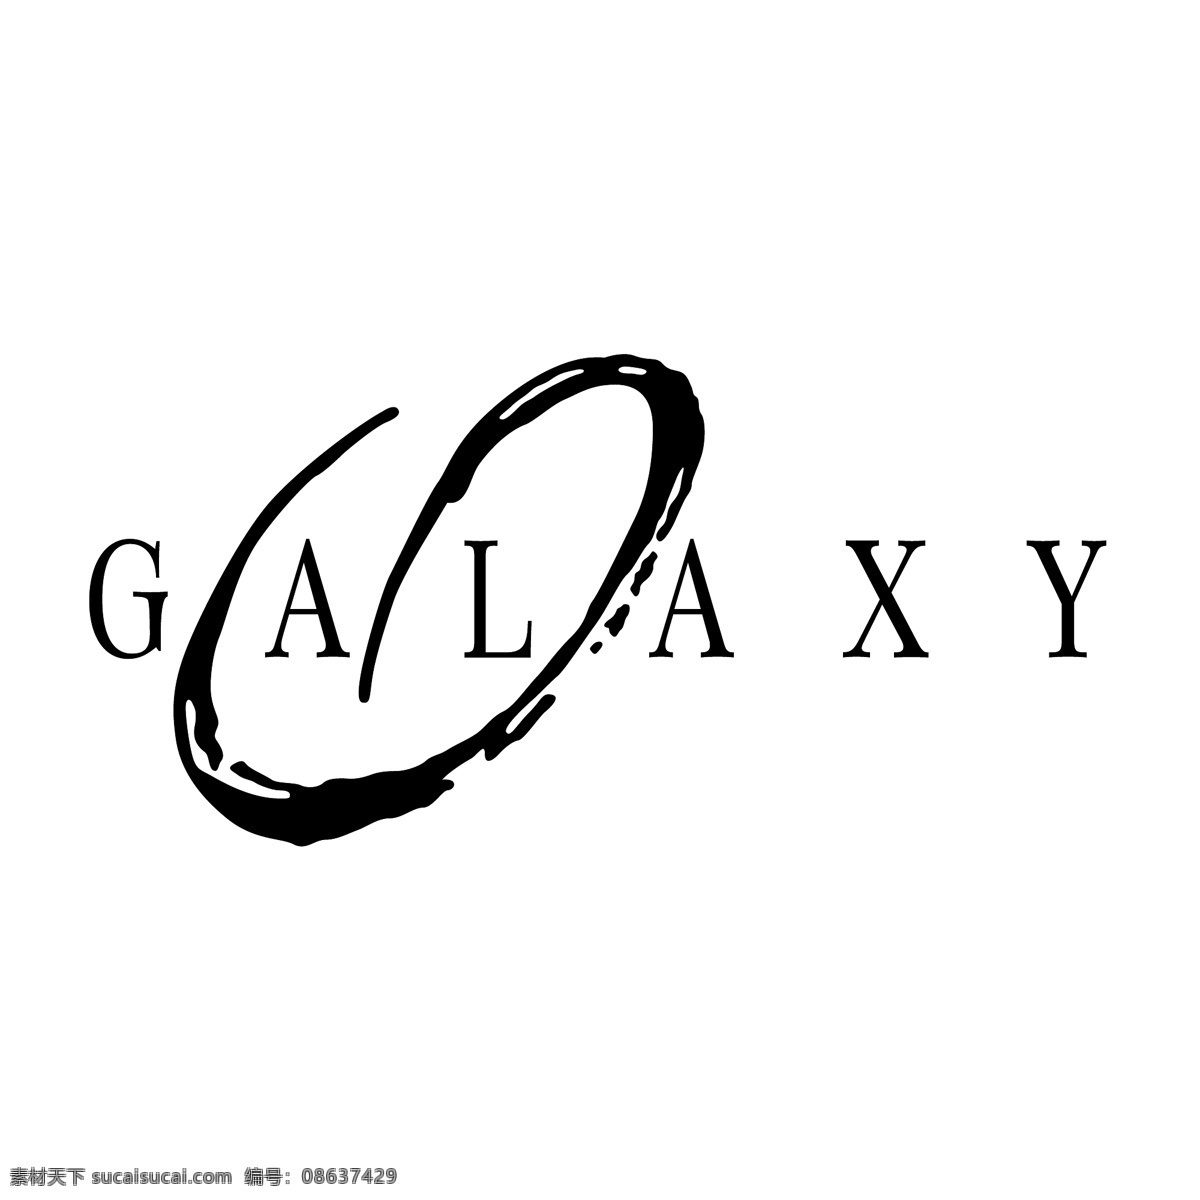 银河2 银河星系 自由 插画 矢量 图像 银河系自由 三星 galaxy s 三星银河向量 向量 螺旋 星系 恒星的星系 nexus s手机 背景 s向量 建筑家居